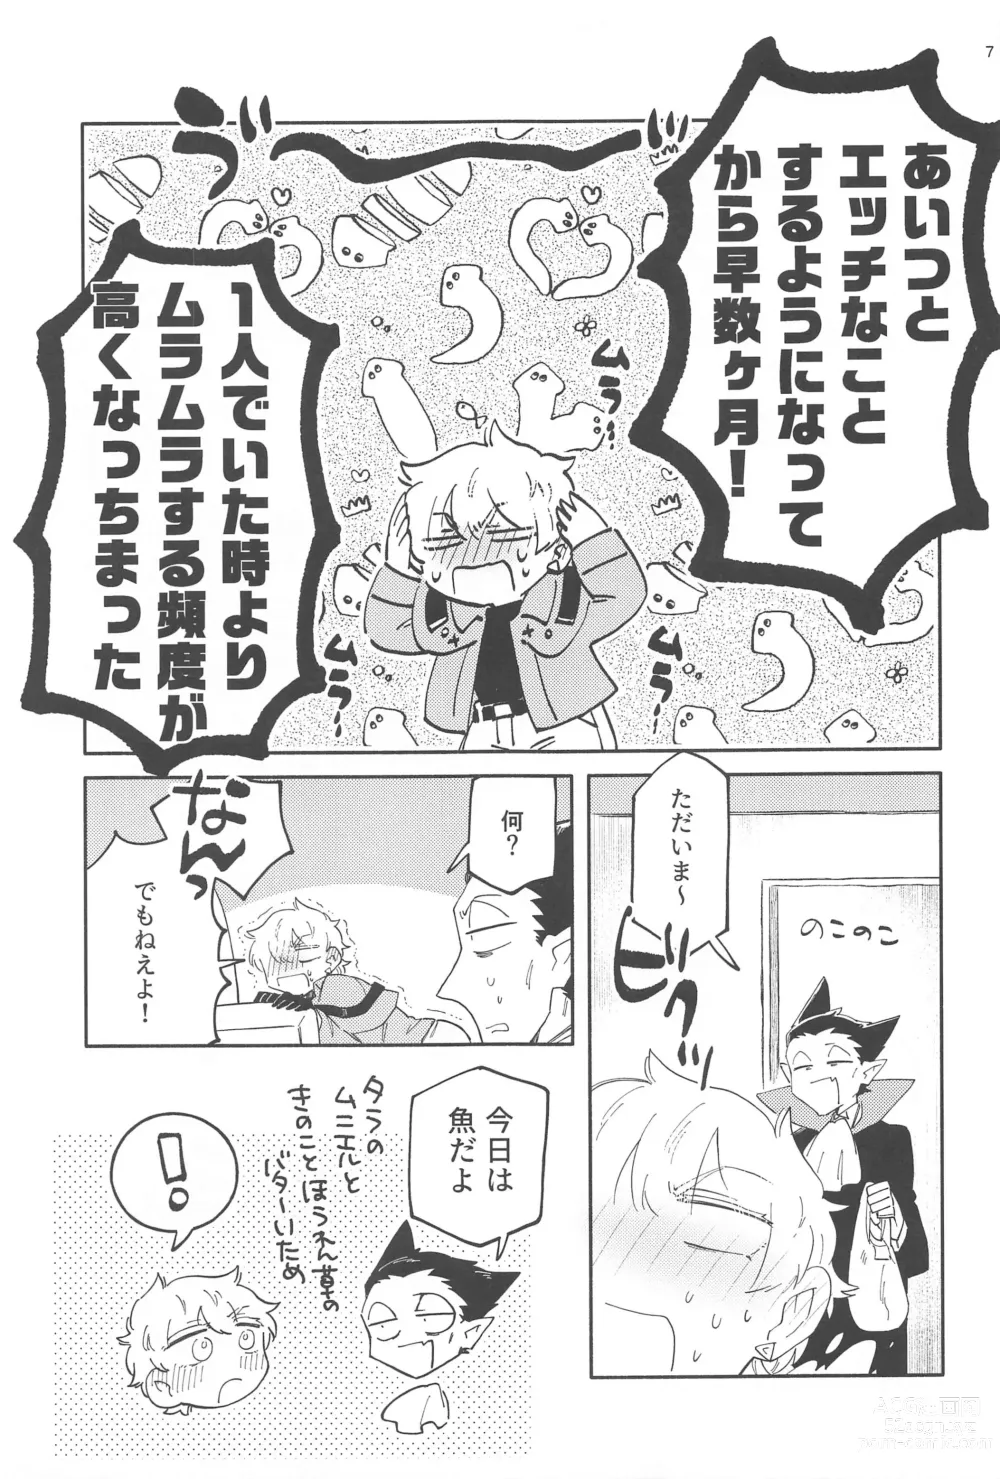 Page 6 of doujinshi ZHKNN!